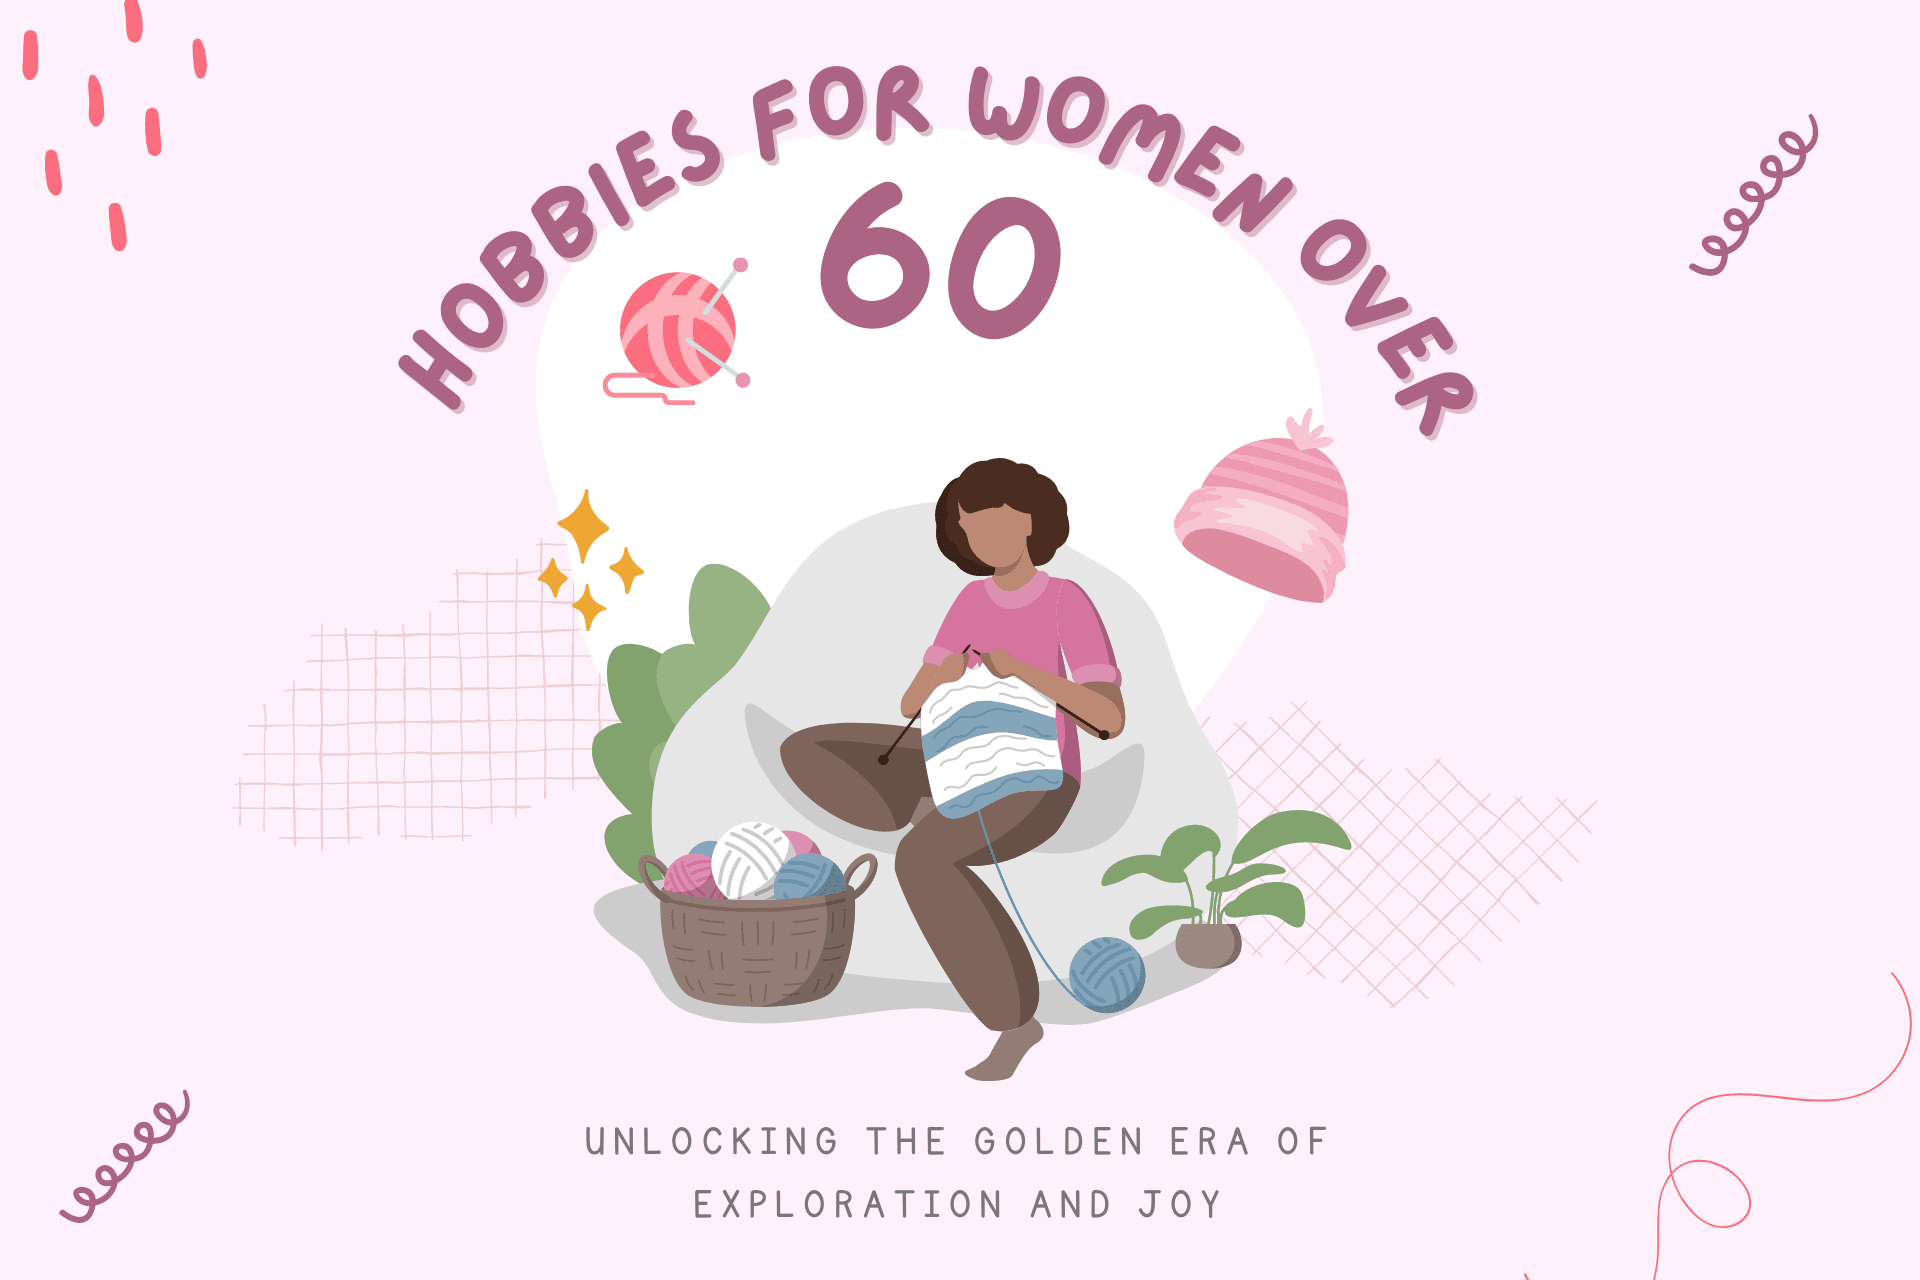 hobbies for women over 60